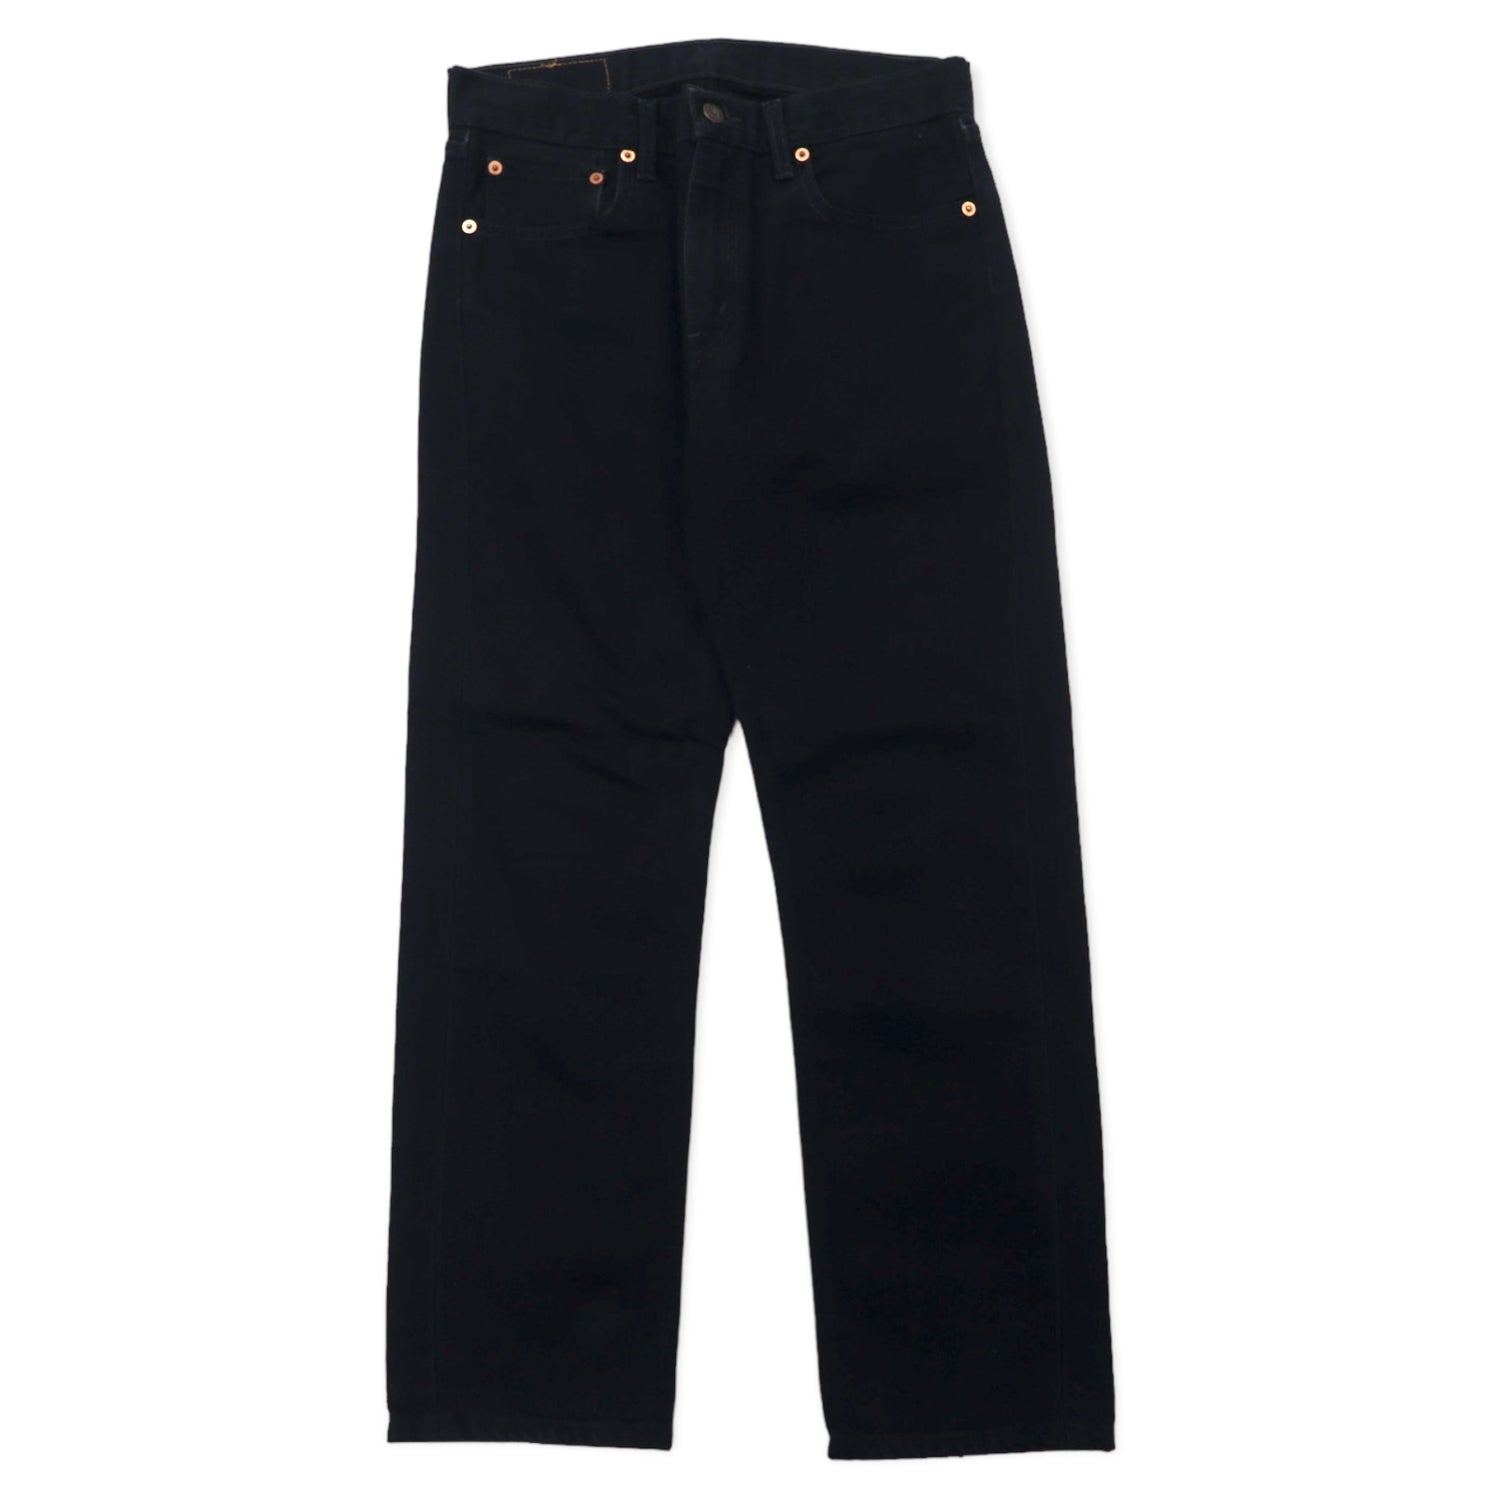 Levi's 90's Eurori Vise Black Jeans Denim Pants 31 Cotton 505 0285 